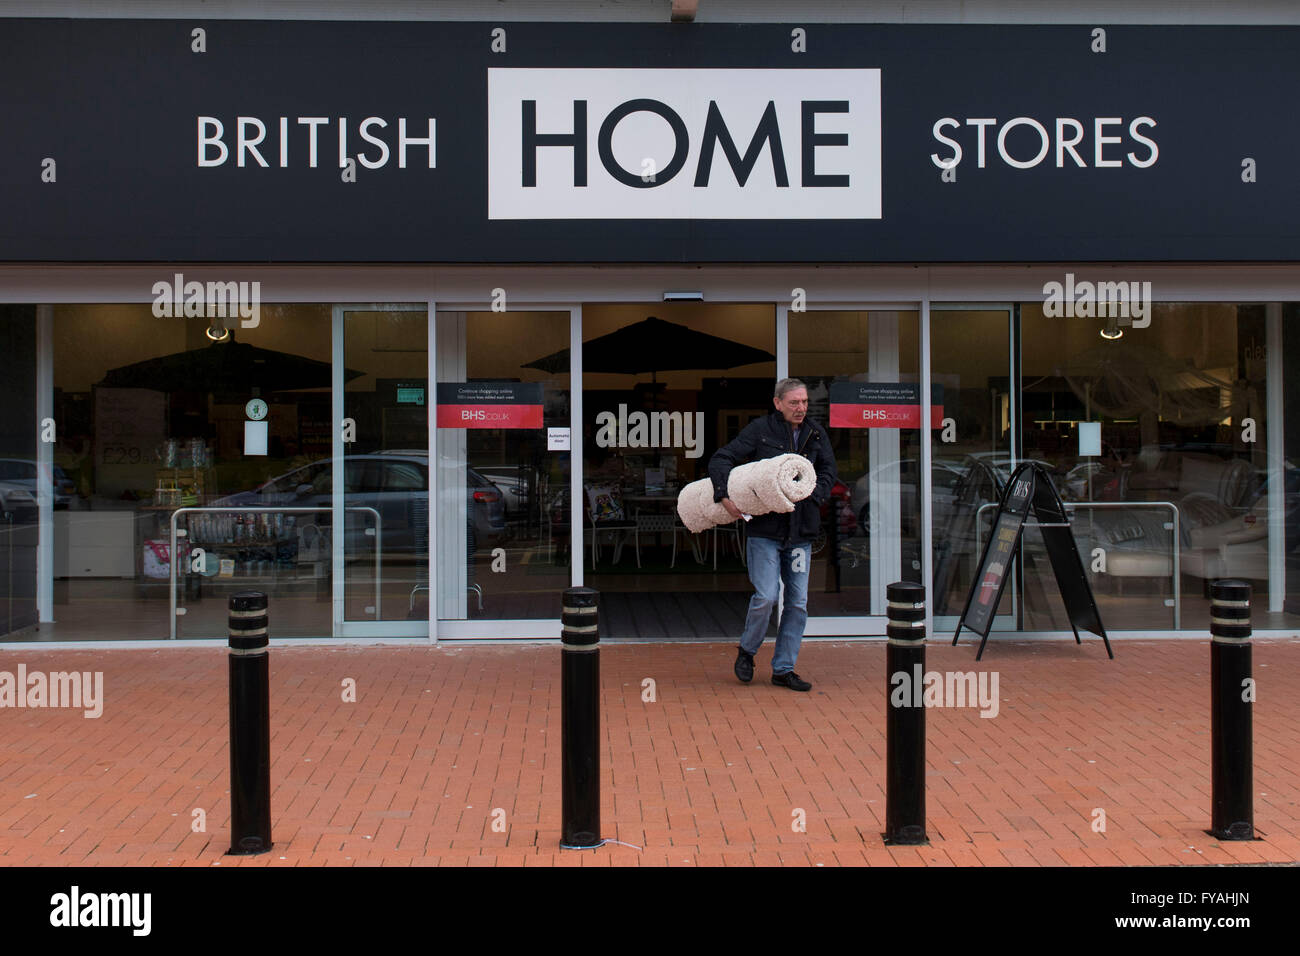 British Home Stores (BHS) lagern bei Cardiff Bay Retailpark, Cardiff. BHS in Verwaltung gegangen ist. Stockfoto